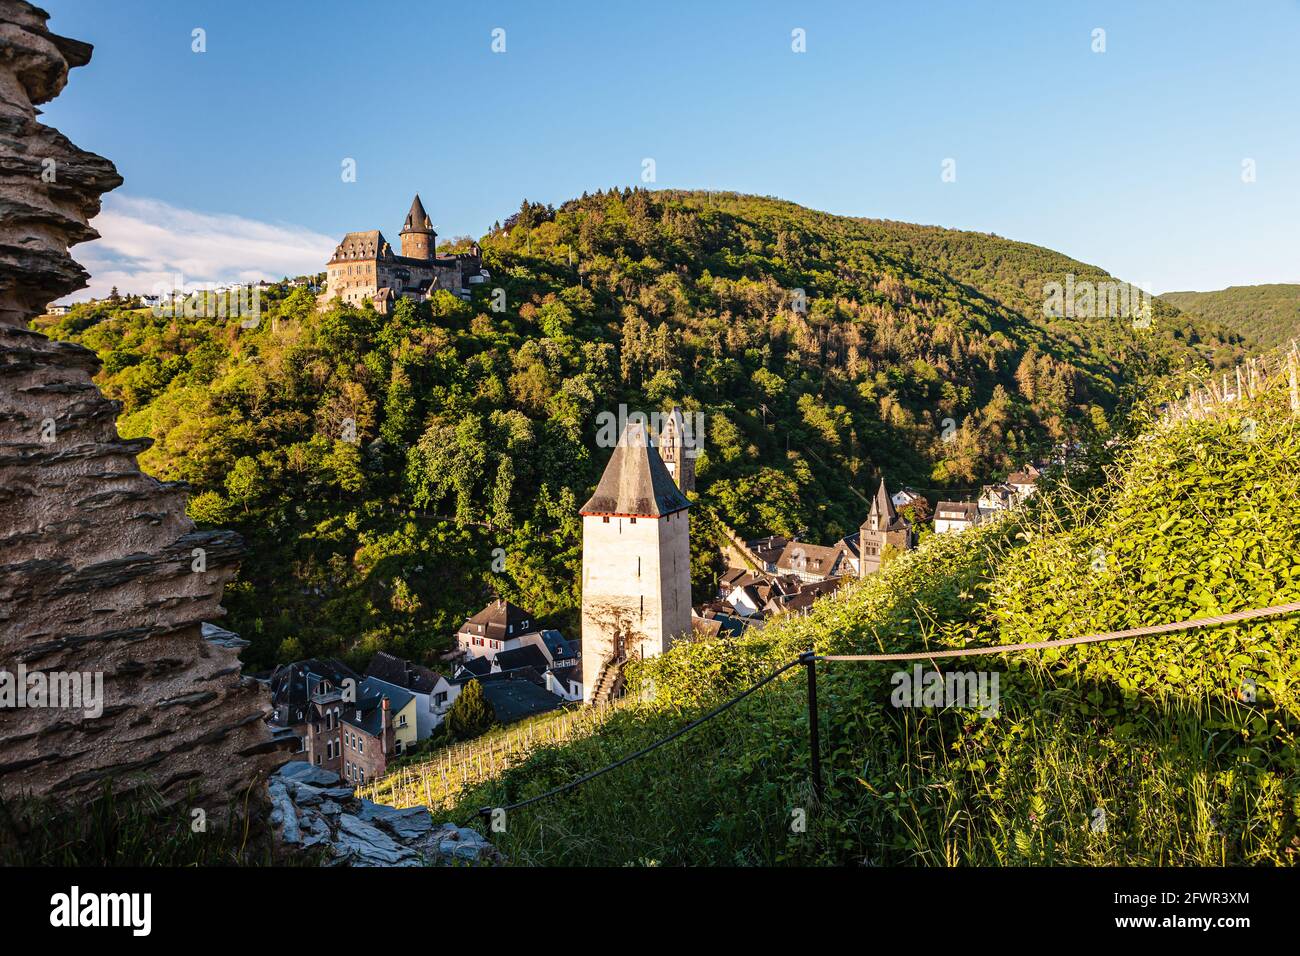 Château de Stahleck et mur historique de la ville à l'aube, Bacharach, vallée du rhin, Allemagne, Europe Banque D'Images